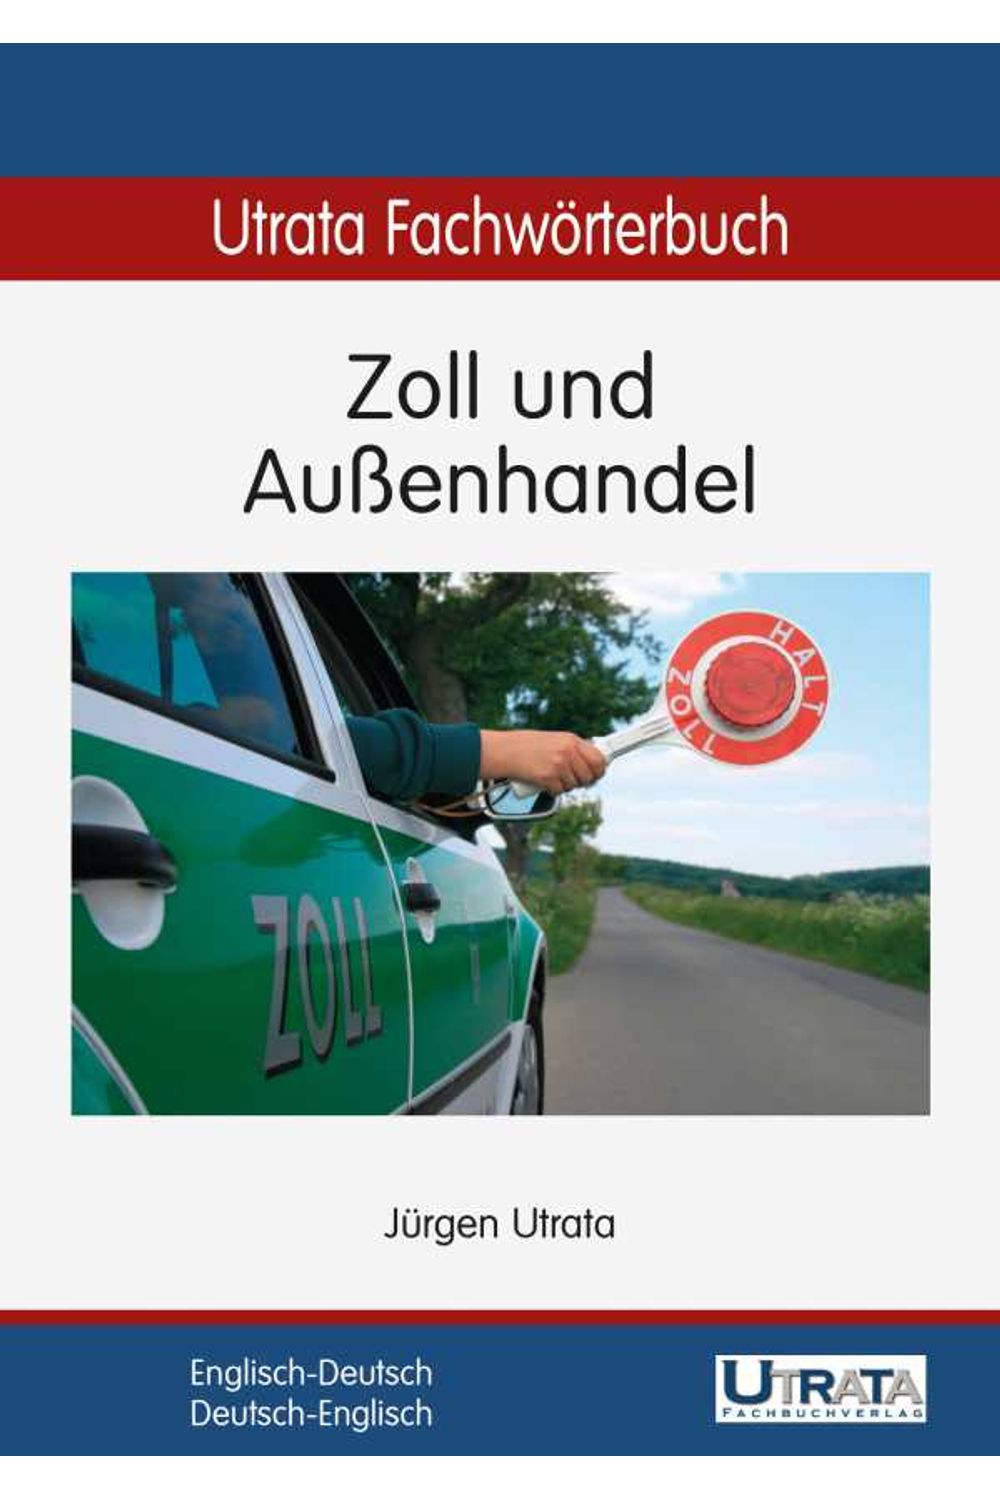 bw-utrata-fachwatildepararterbuch-zoll-und-auatildeenhandel-englischdeutsch-utrata-fachbuchverlag-9783944318127